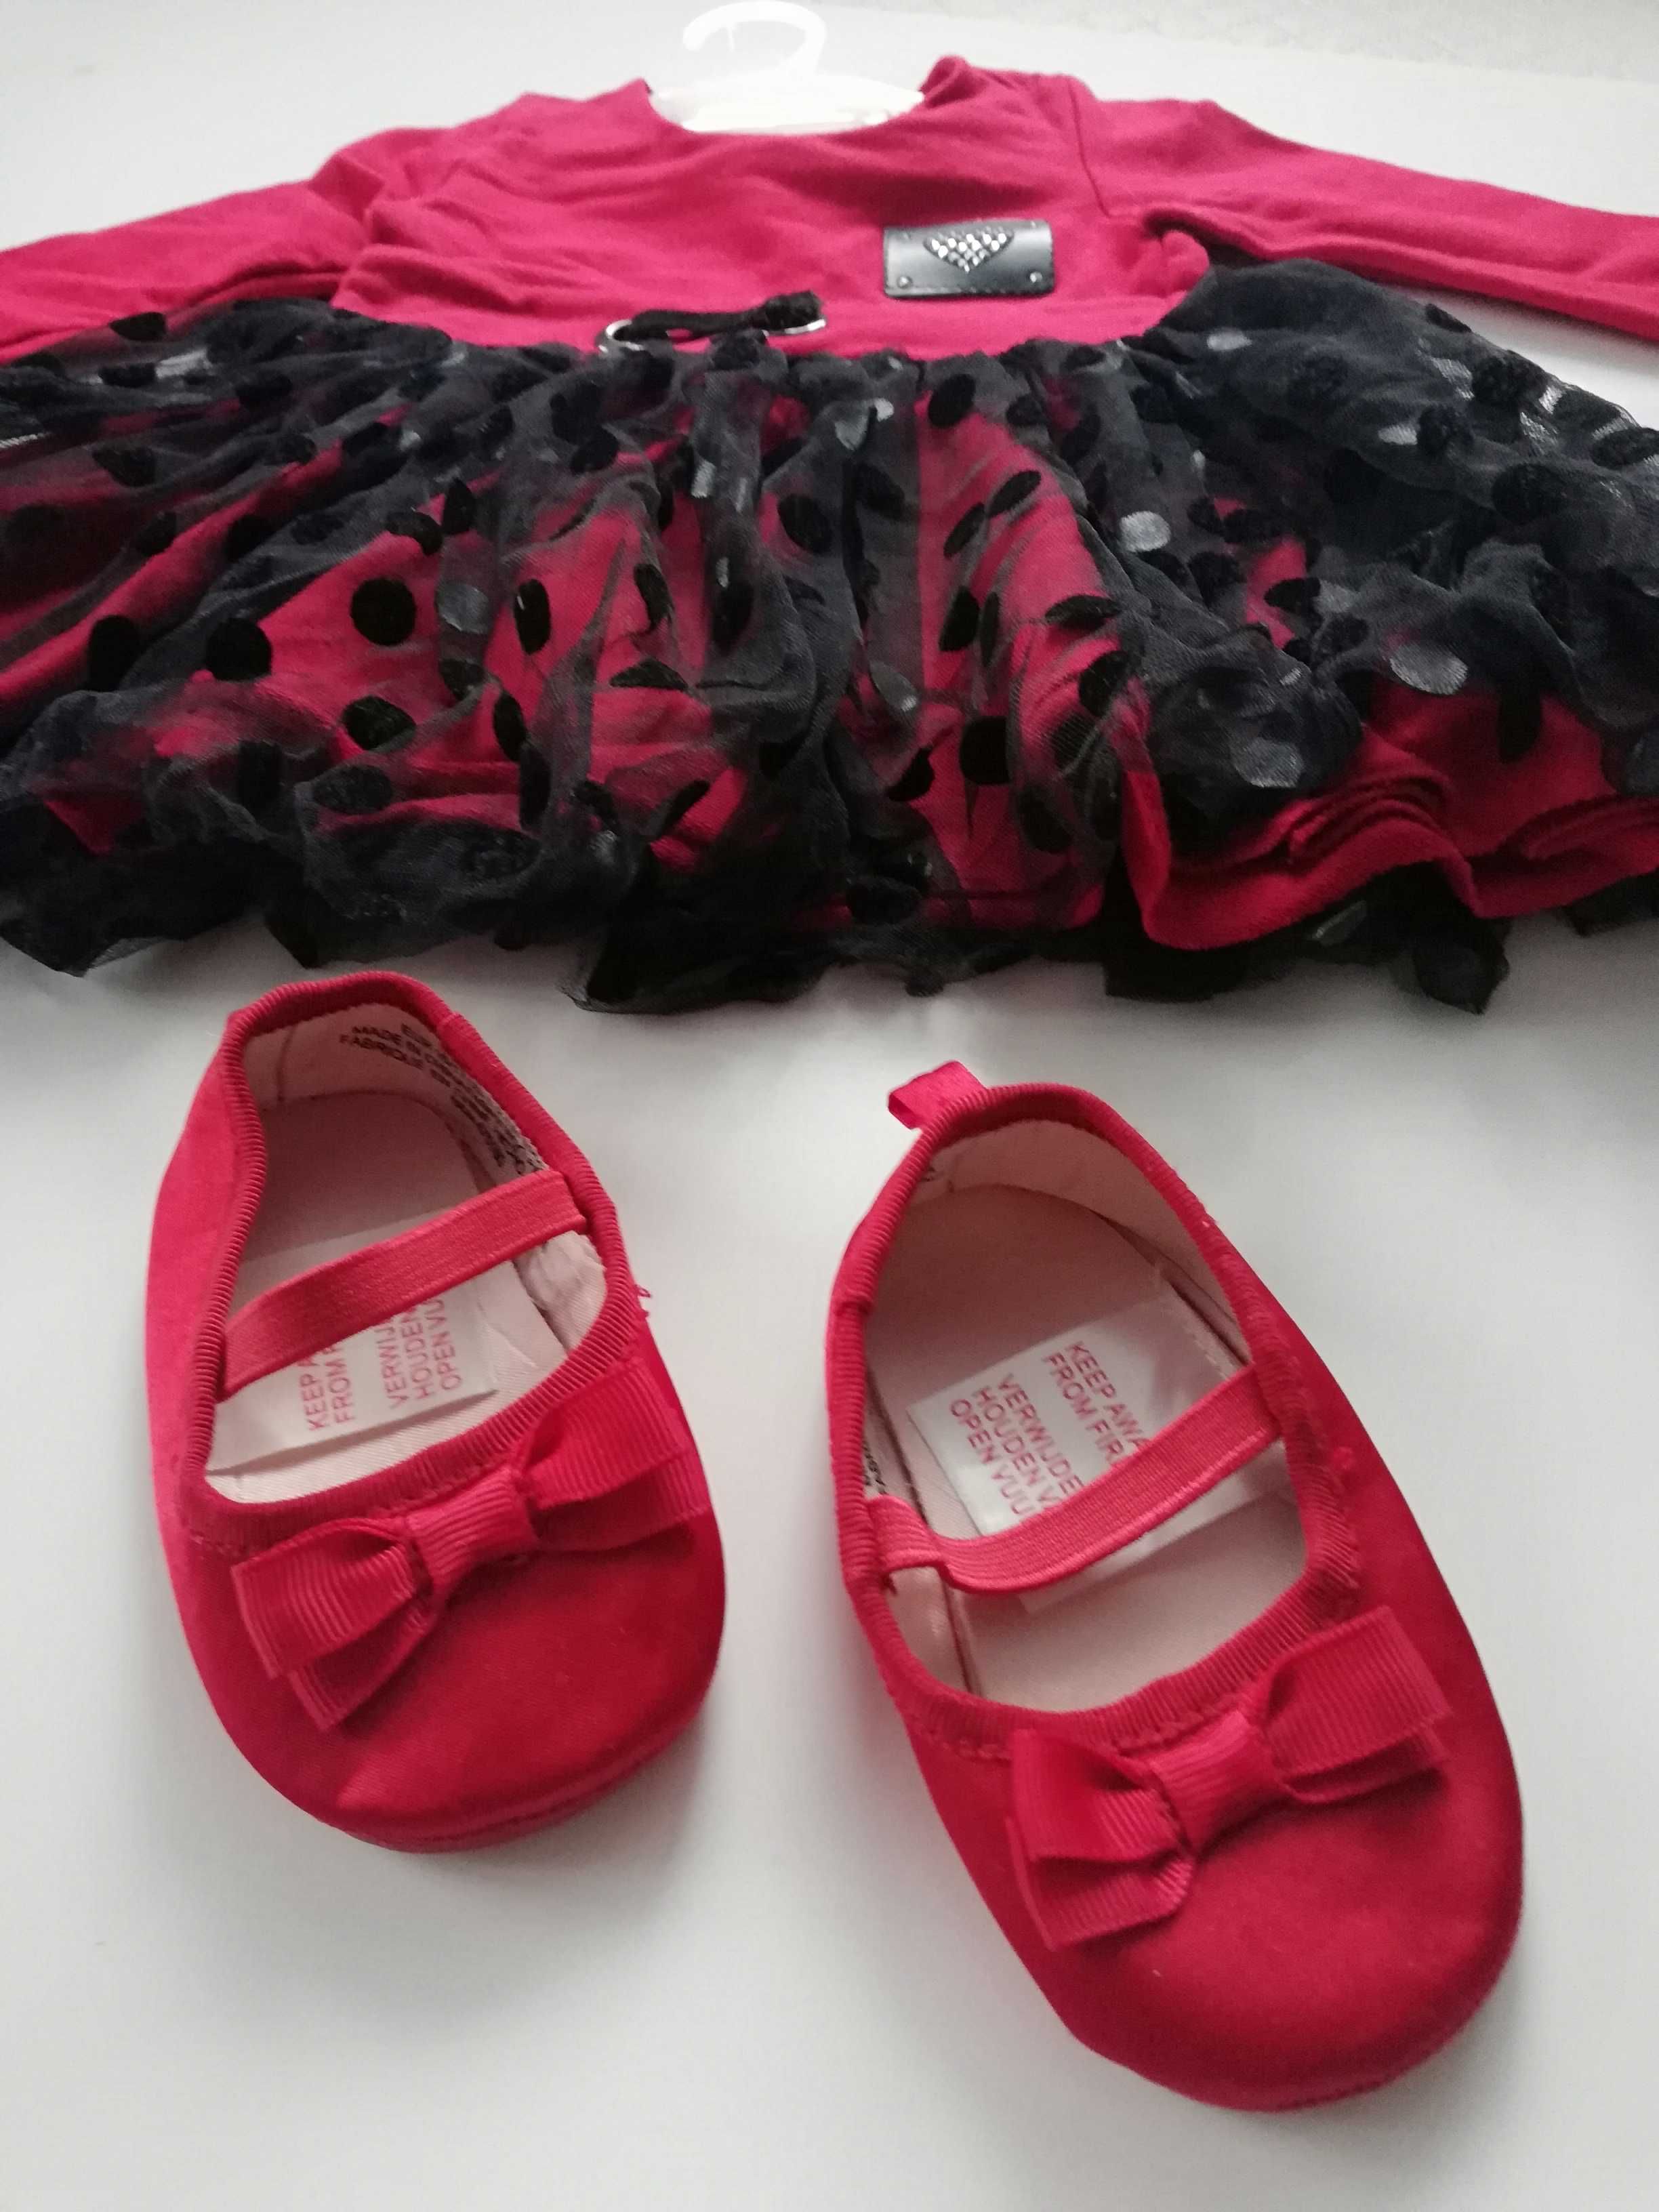 Okazja!! Piękna czerwona sukienka i balerinki firmy Hm! Rozmiar 74